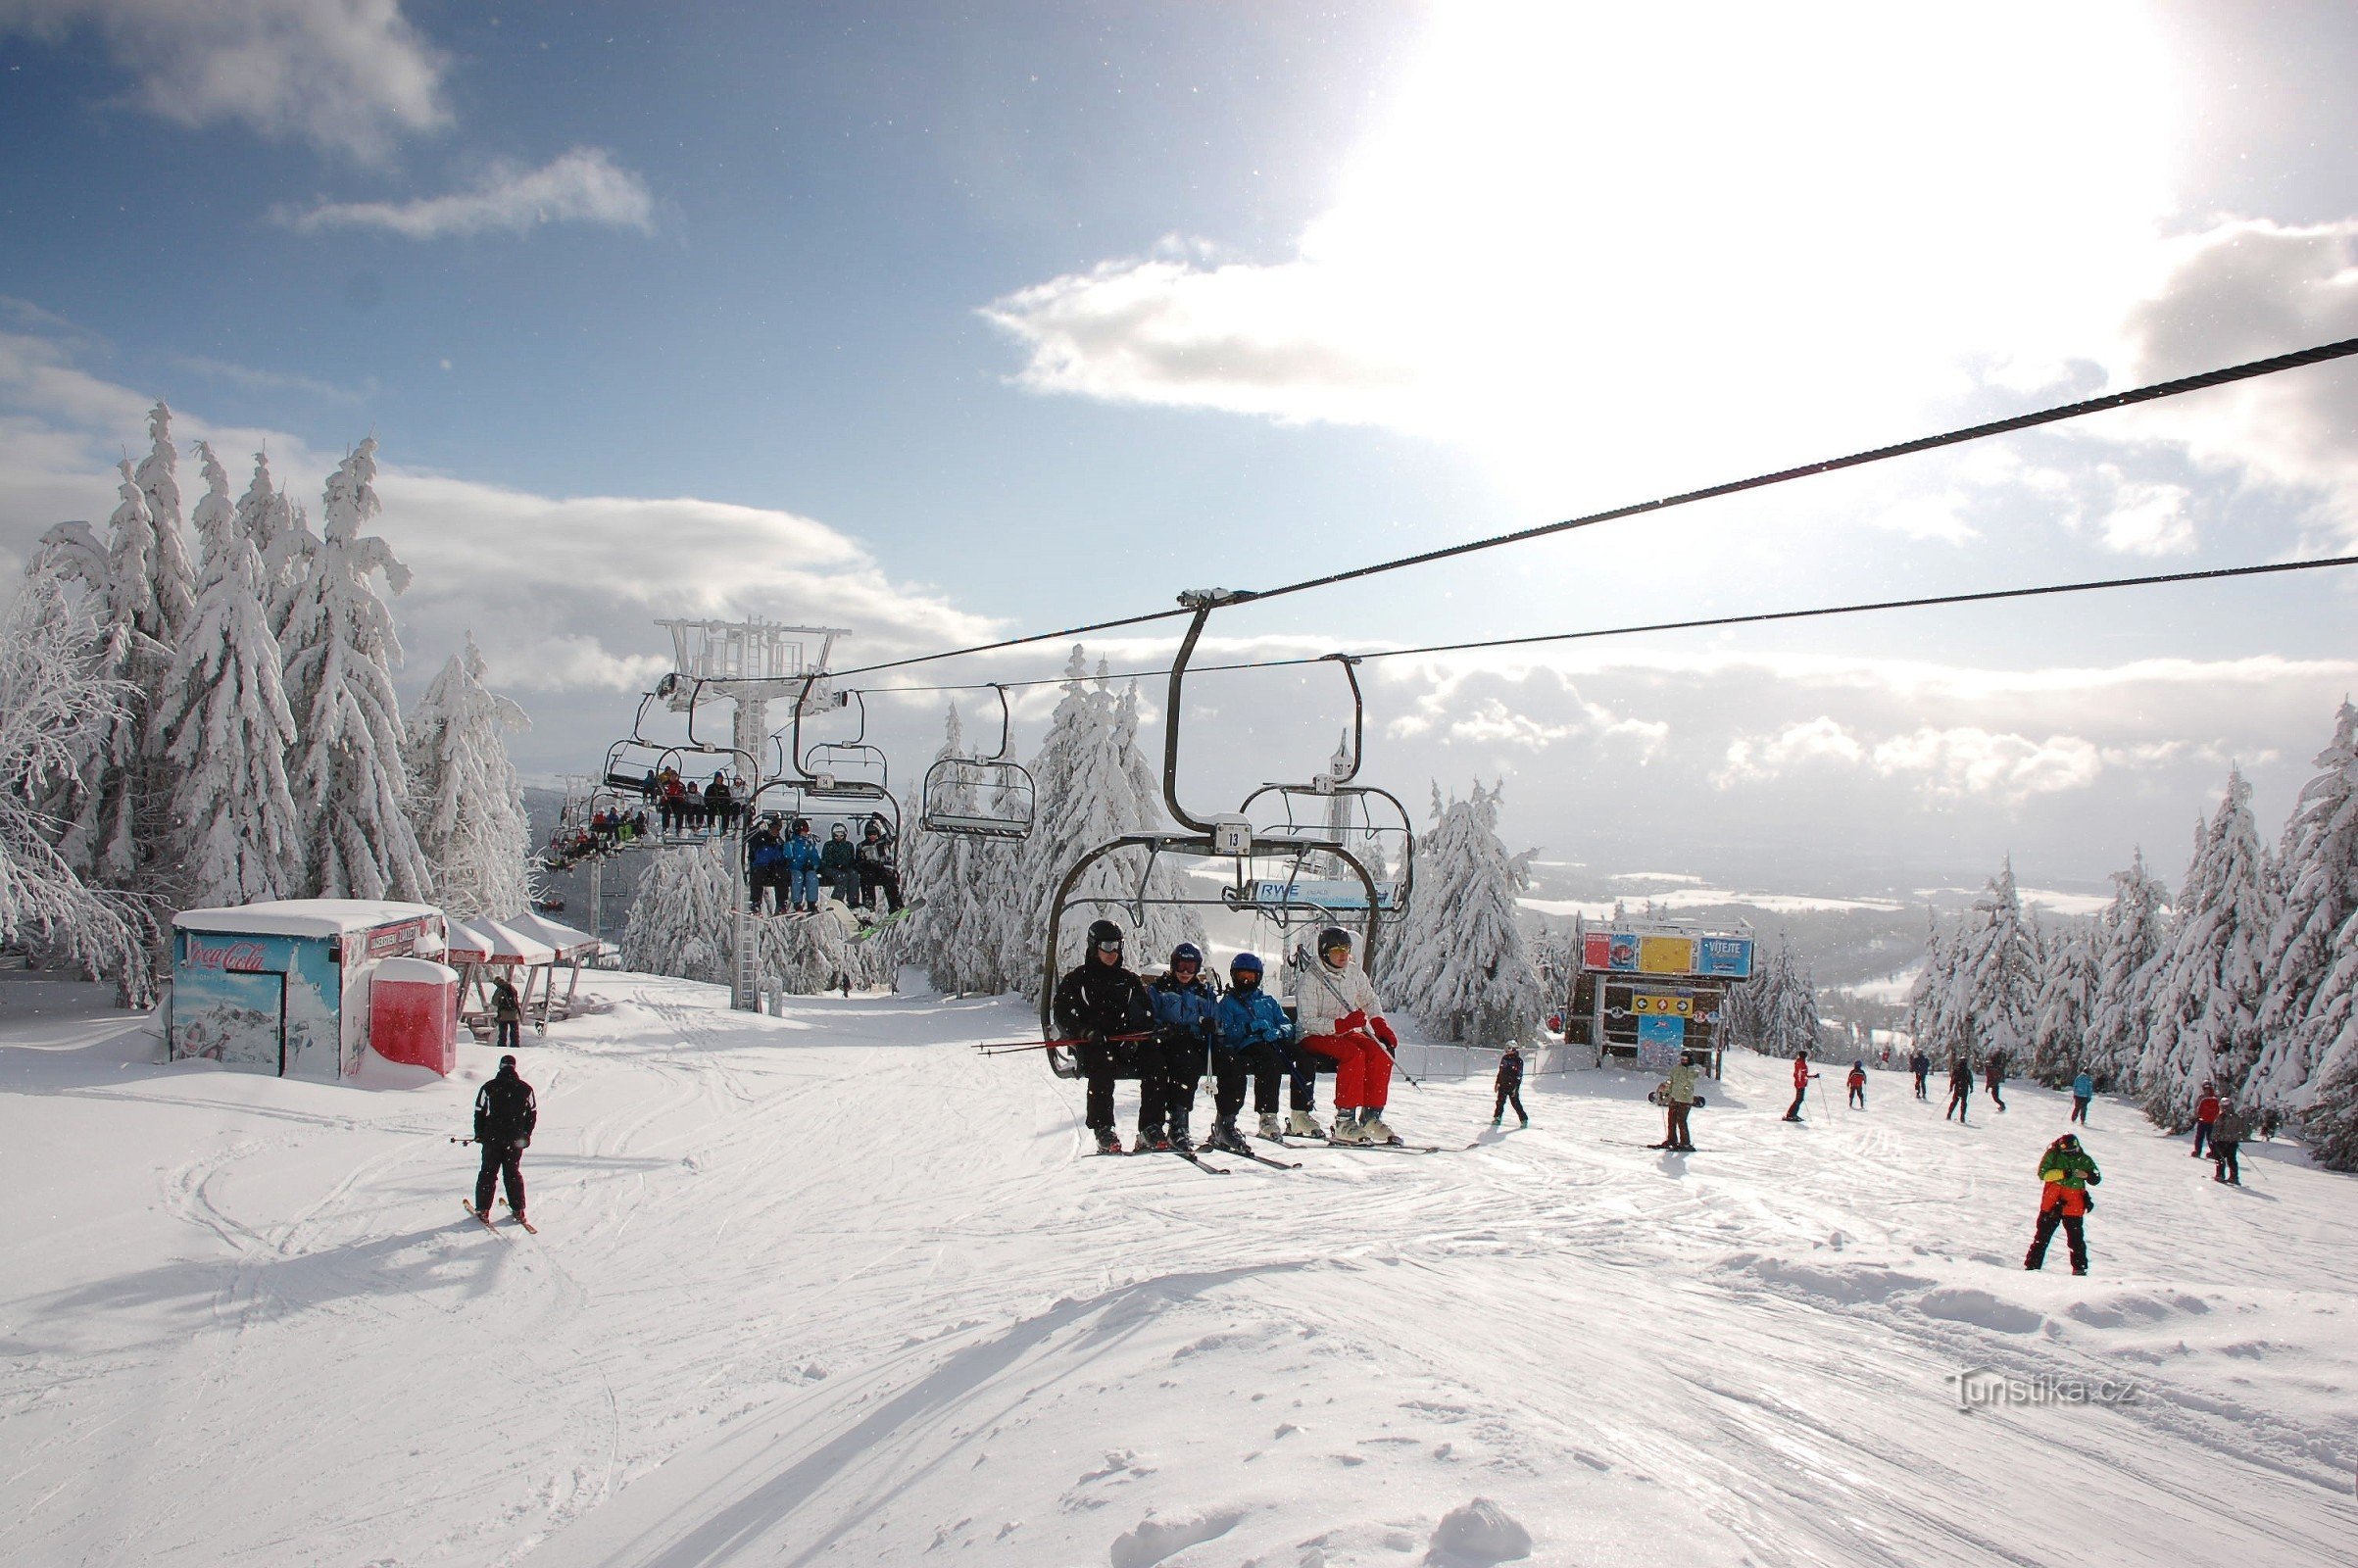 Centro de esqui Říčky - uma moderna estância de esqui no coração das Montanhas da Águia